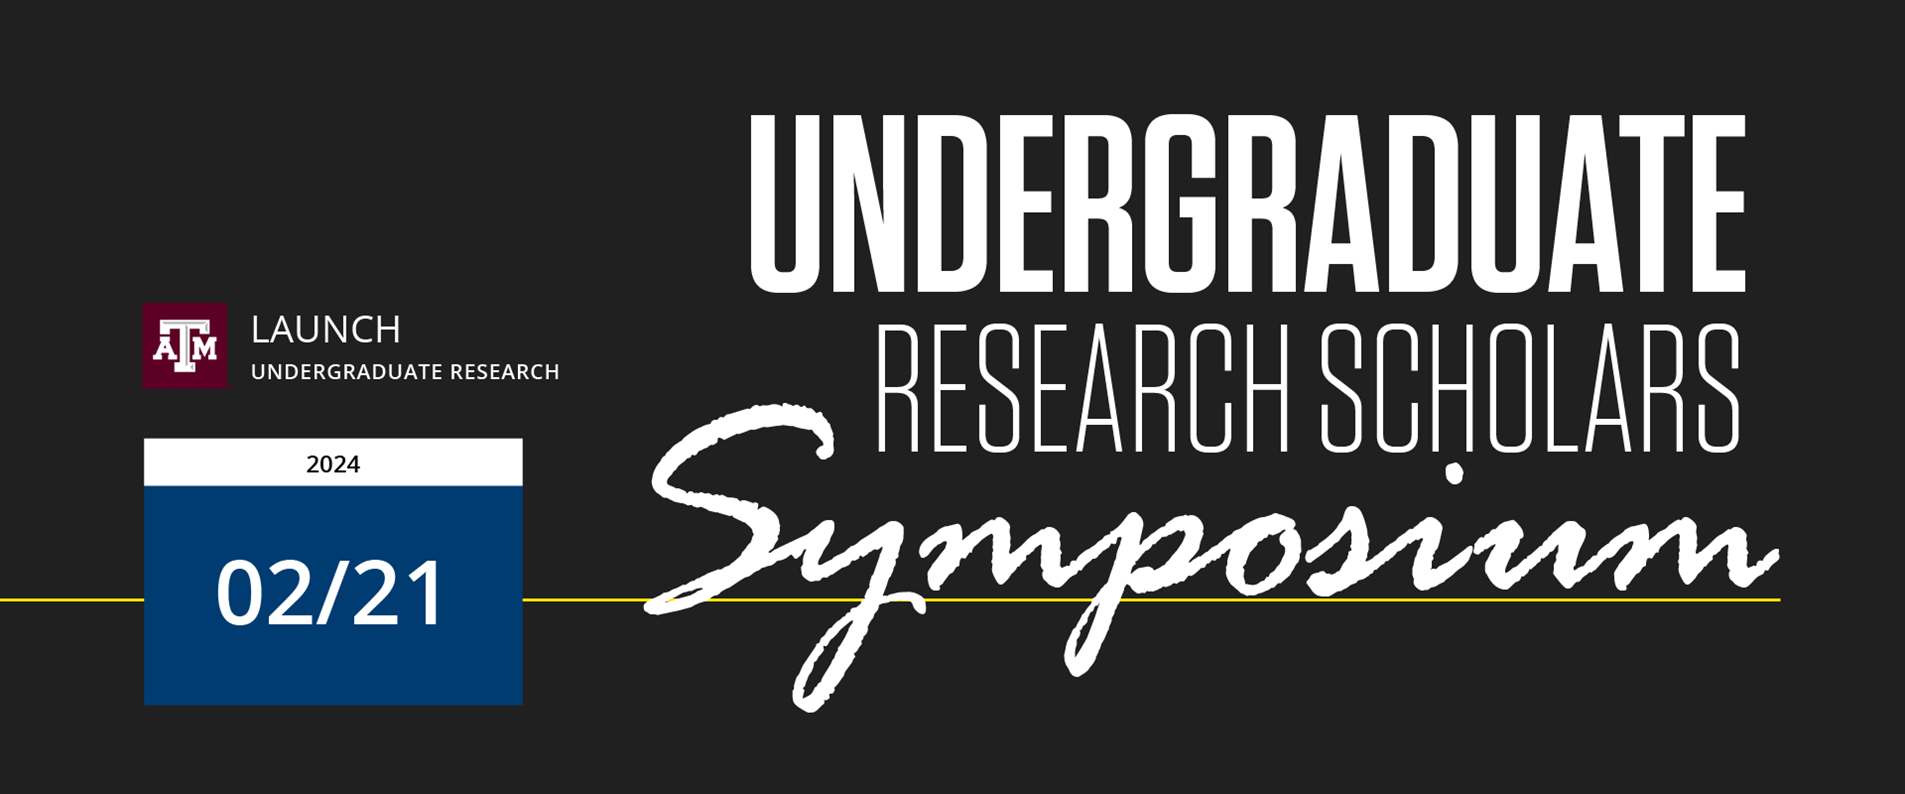 LAUNCH Undergraduate Research Scholars Symposium